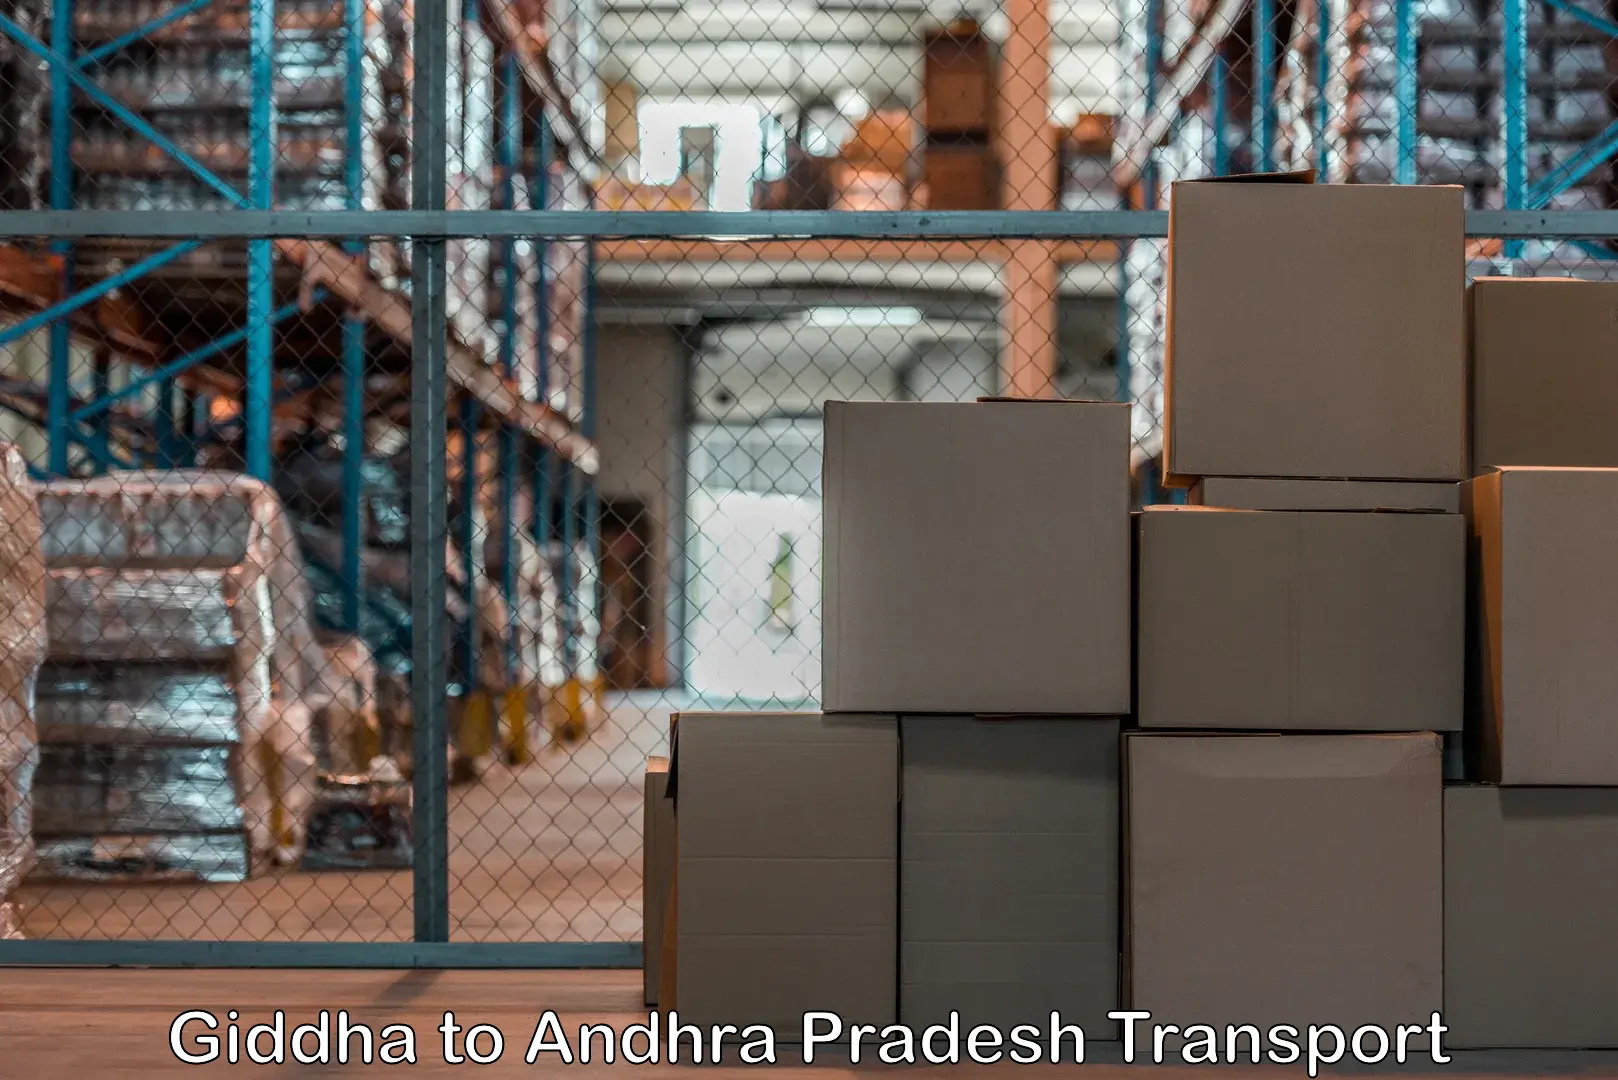 Luggage transport services Giddha to Draksharamam